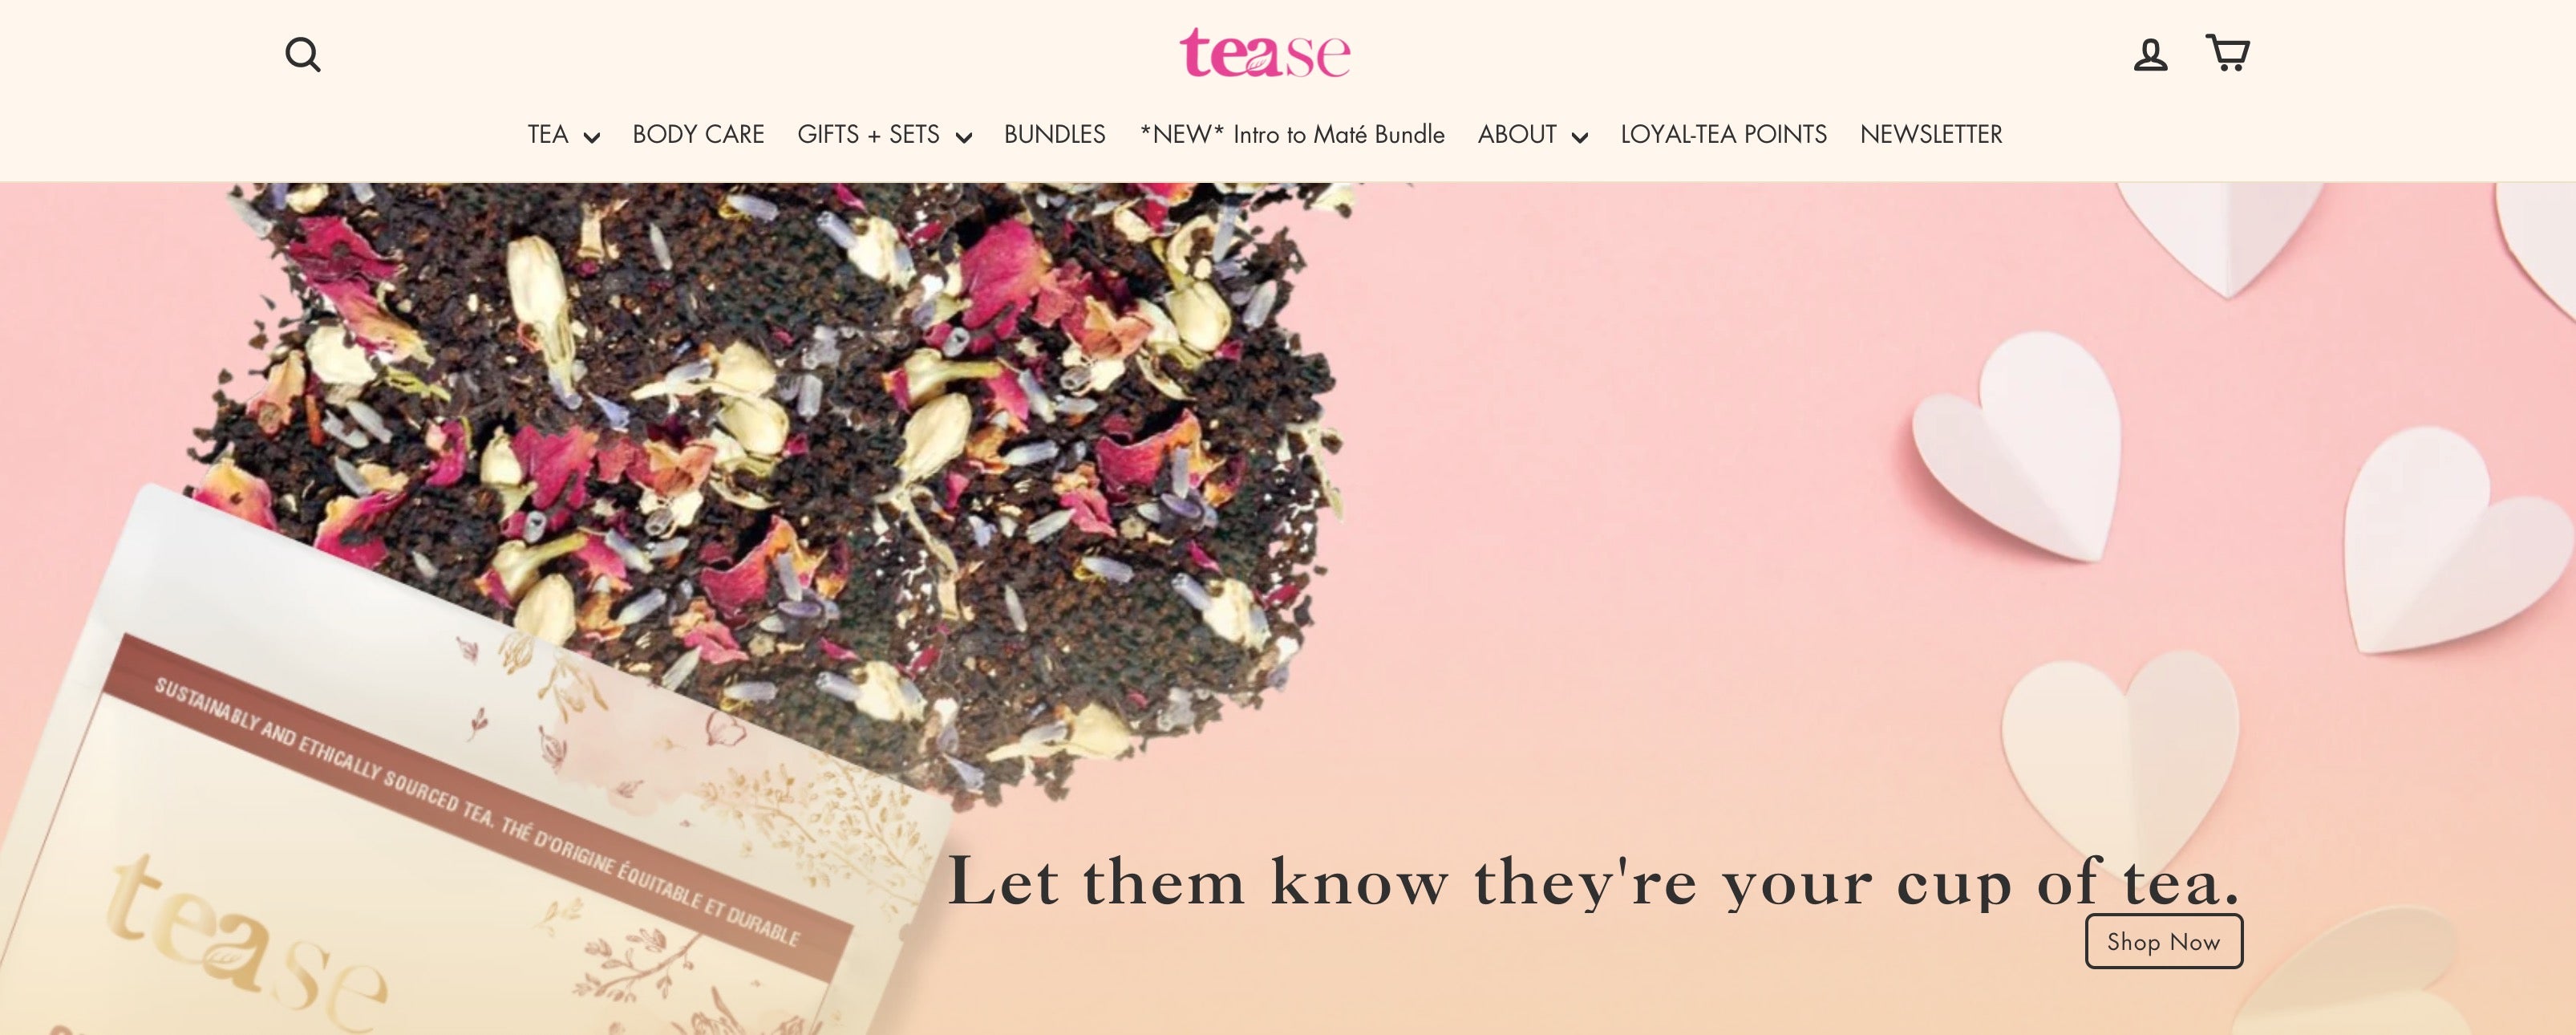 teaste tea website